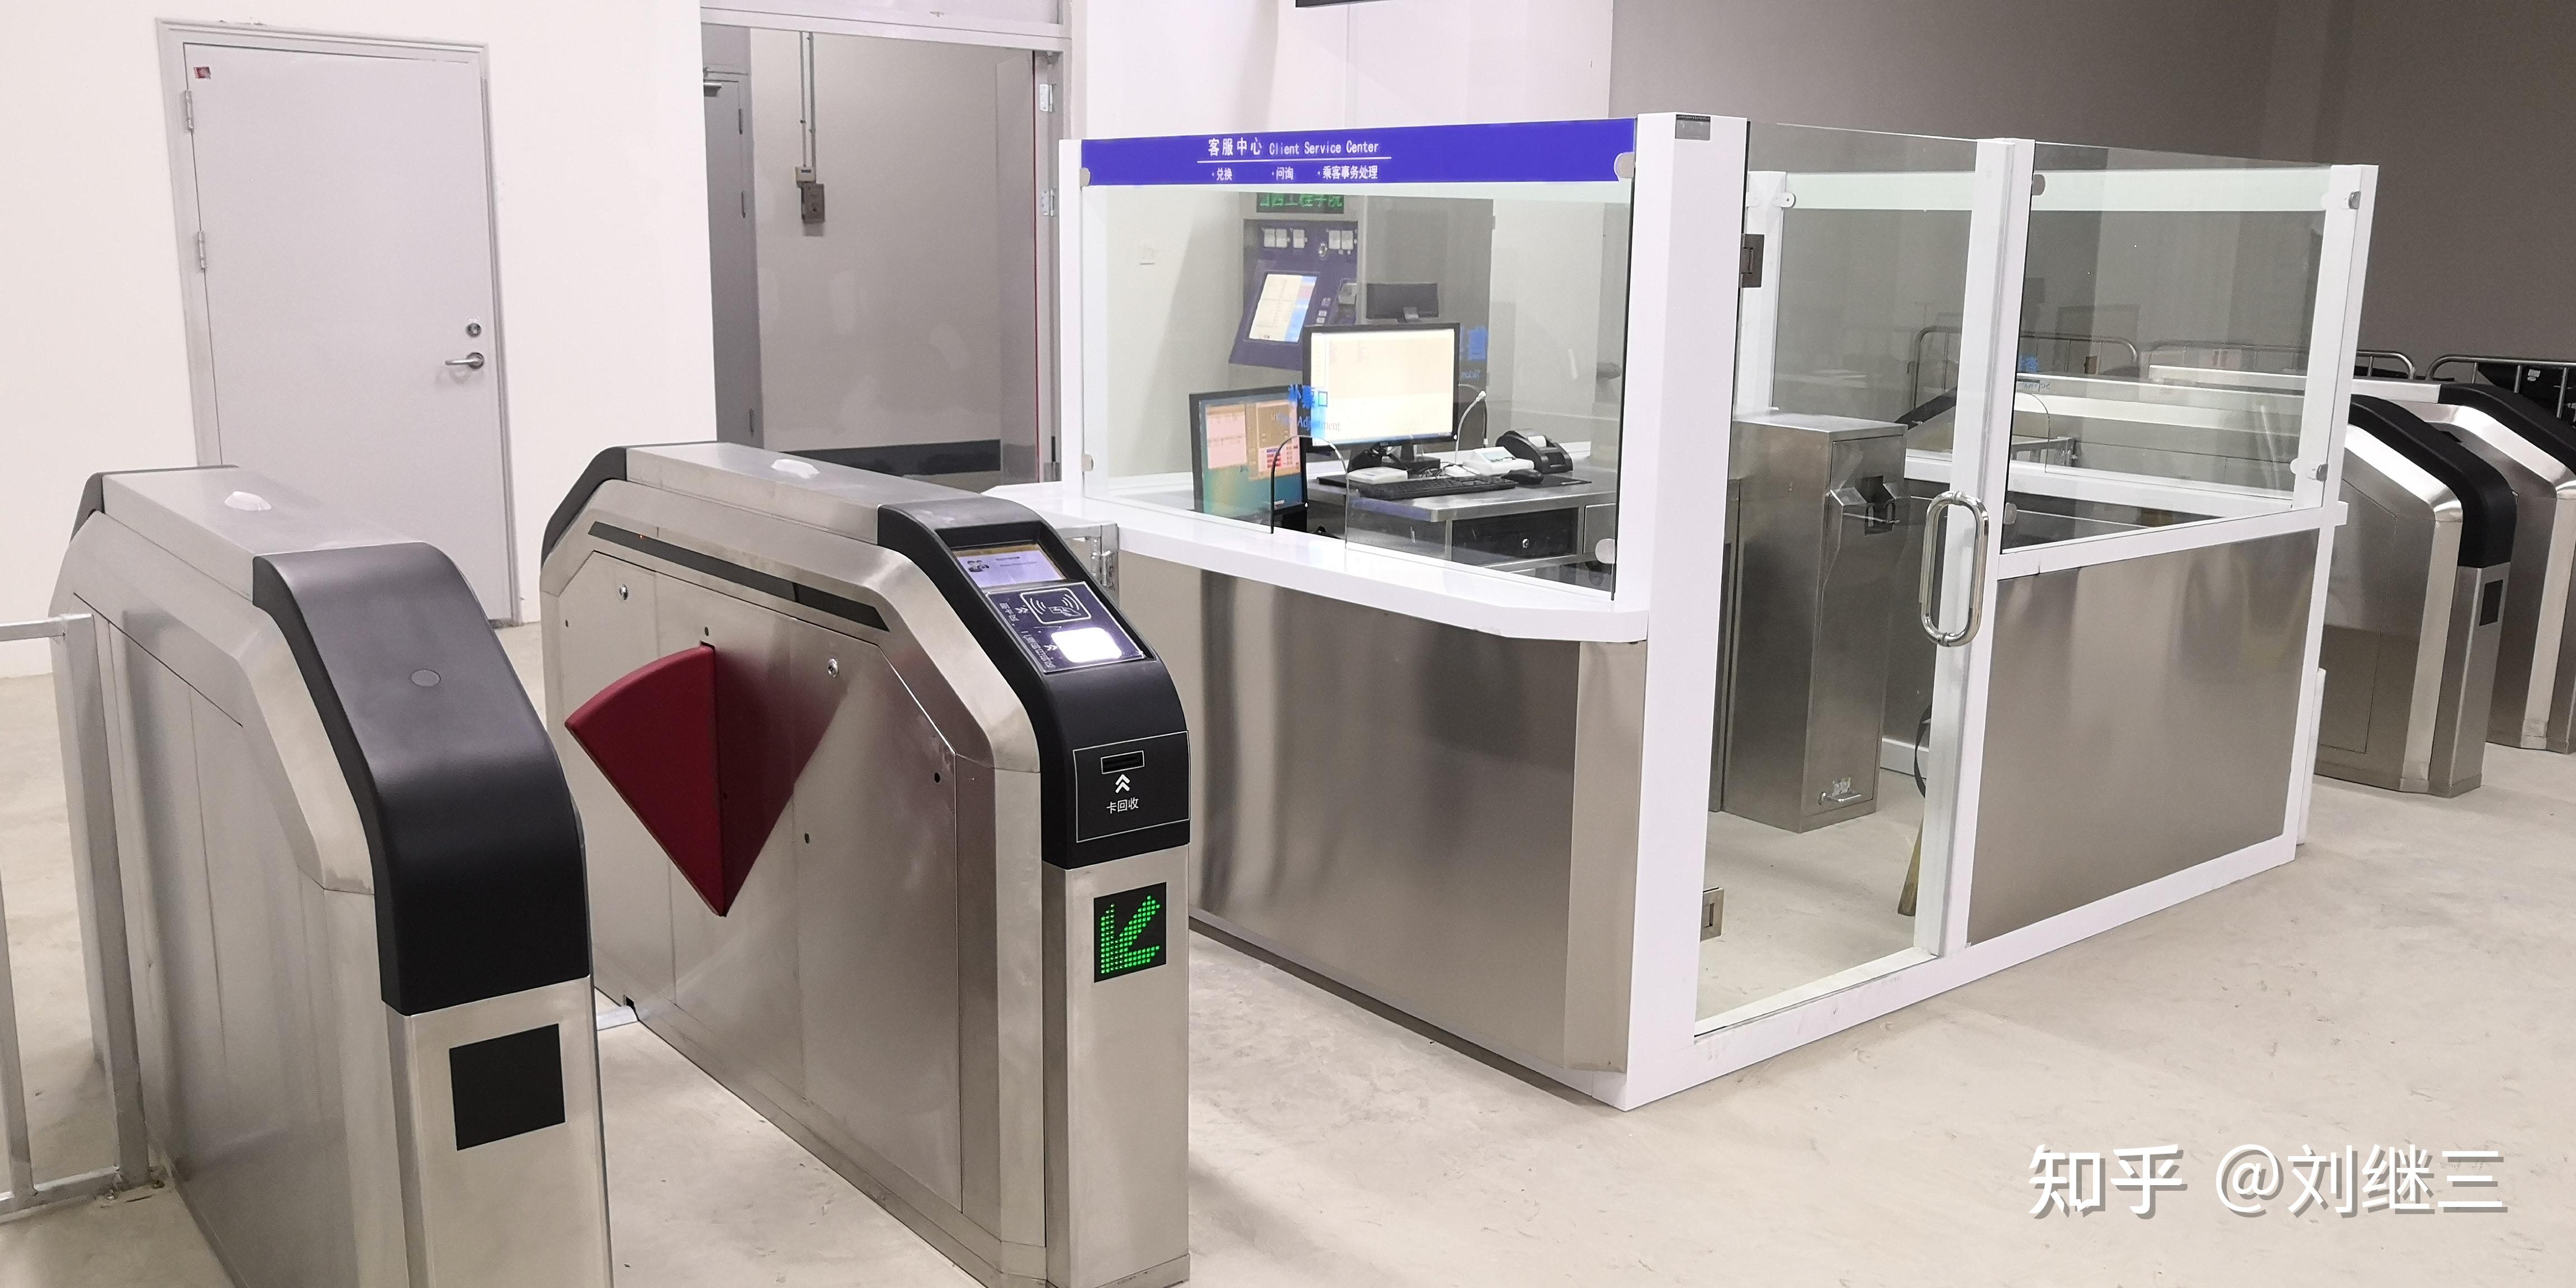 站务1 x地铁afc设备之回缩型门式自动检票机和智慧拍打门式检票机